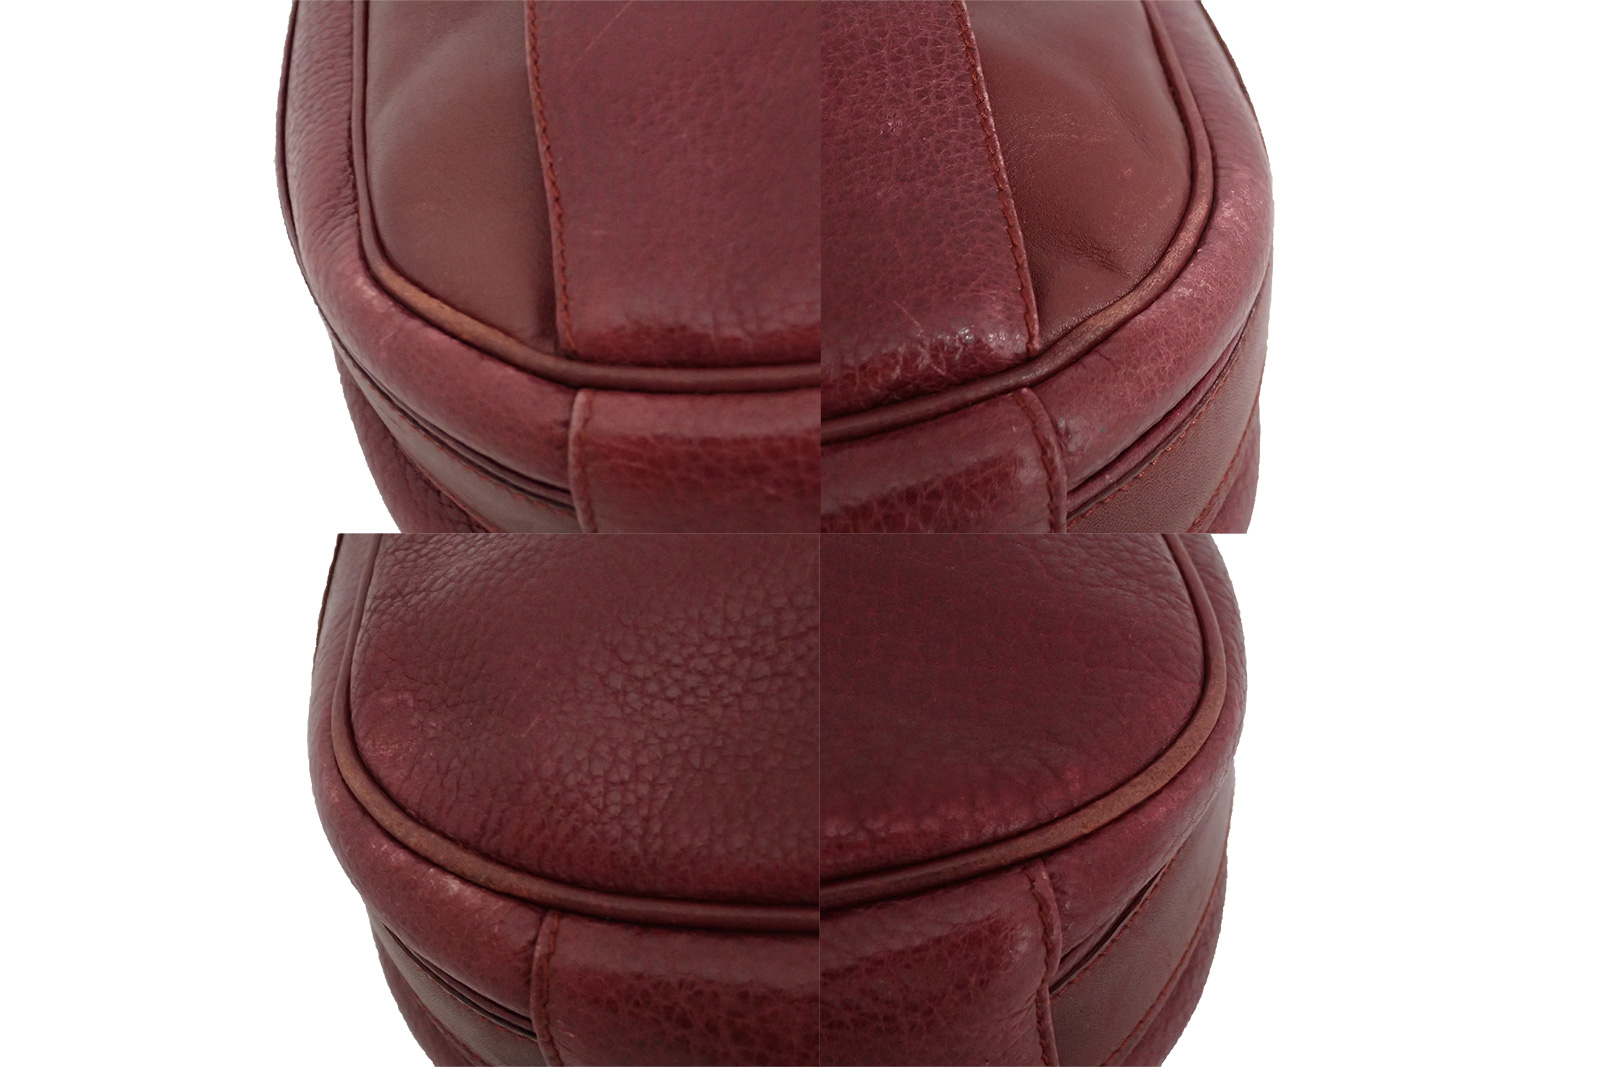 Auth Cartier Must De Cartier Shoulder Bag Burgundy Leather *Worn-out